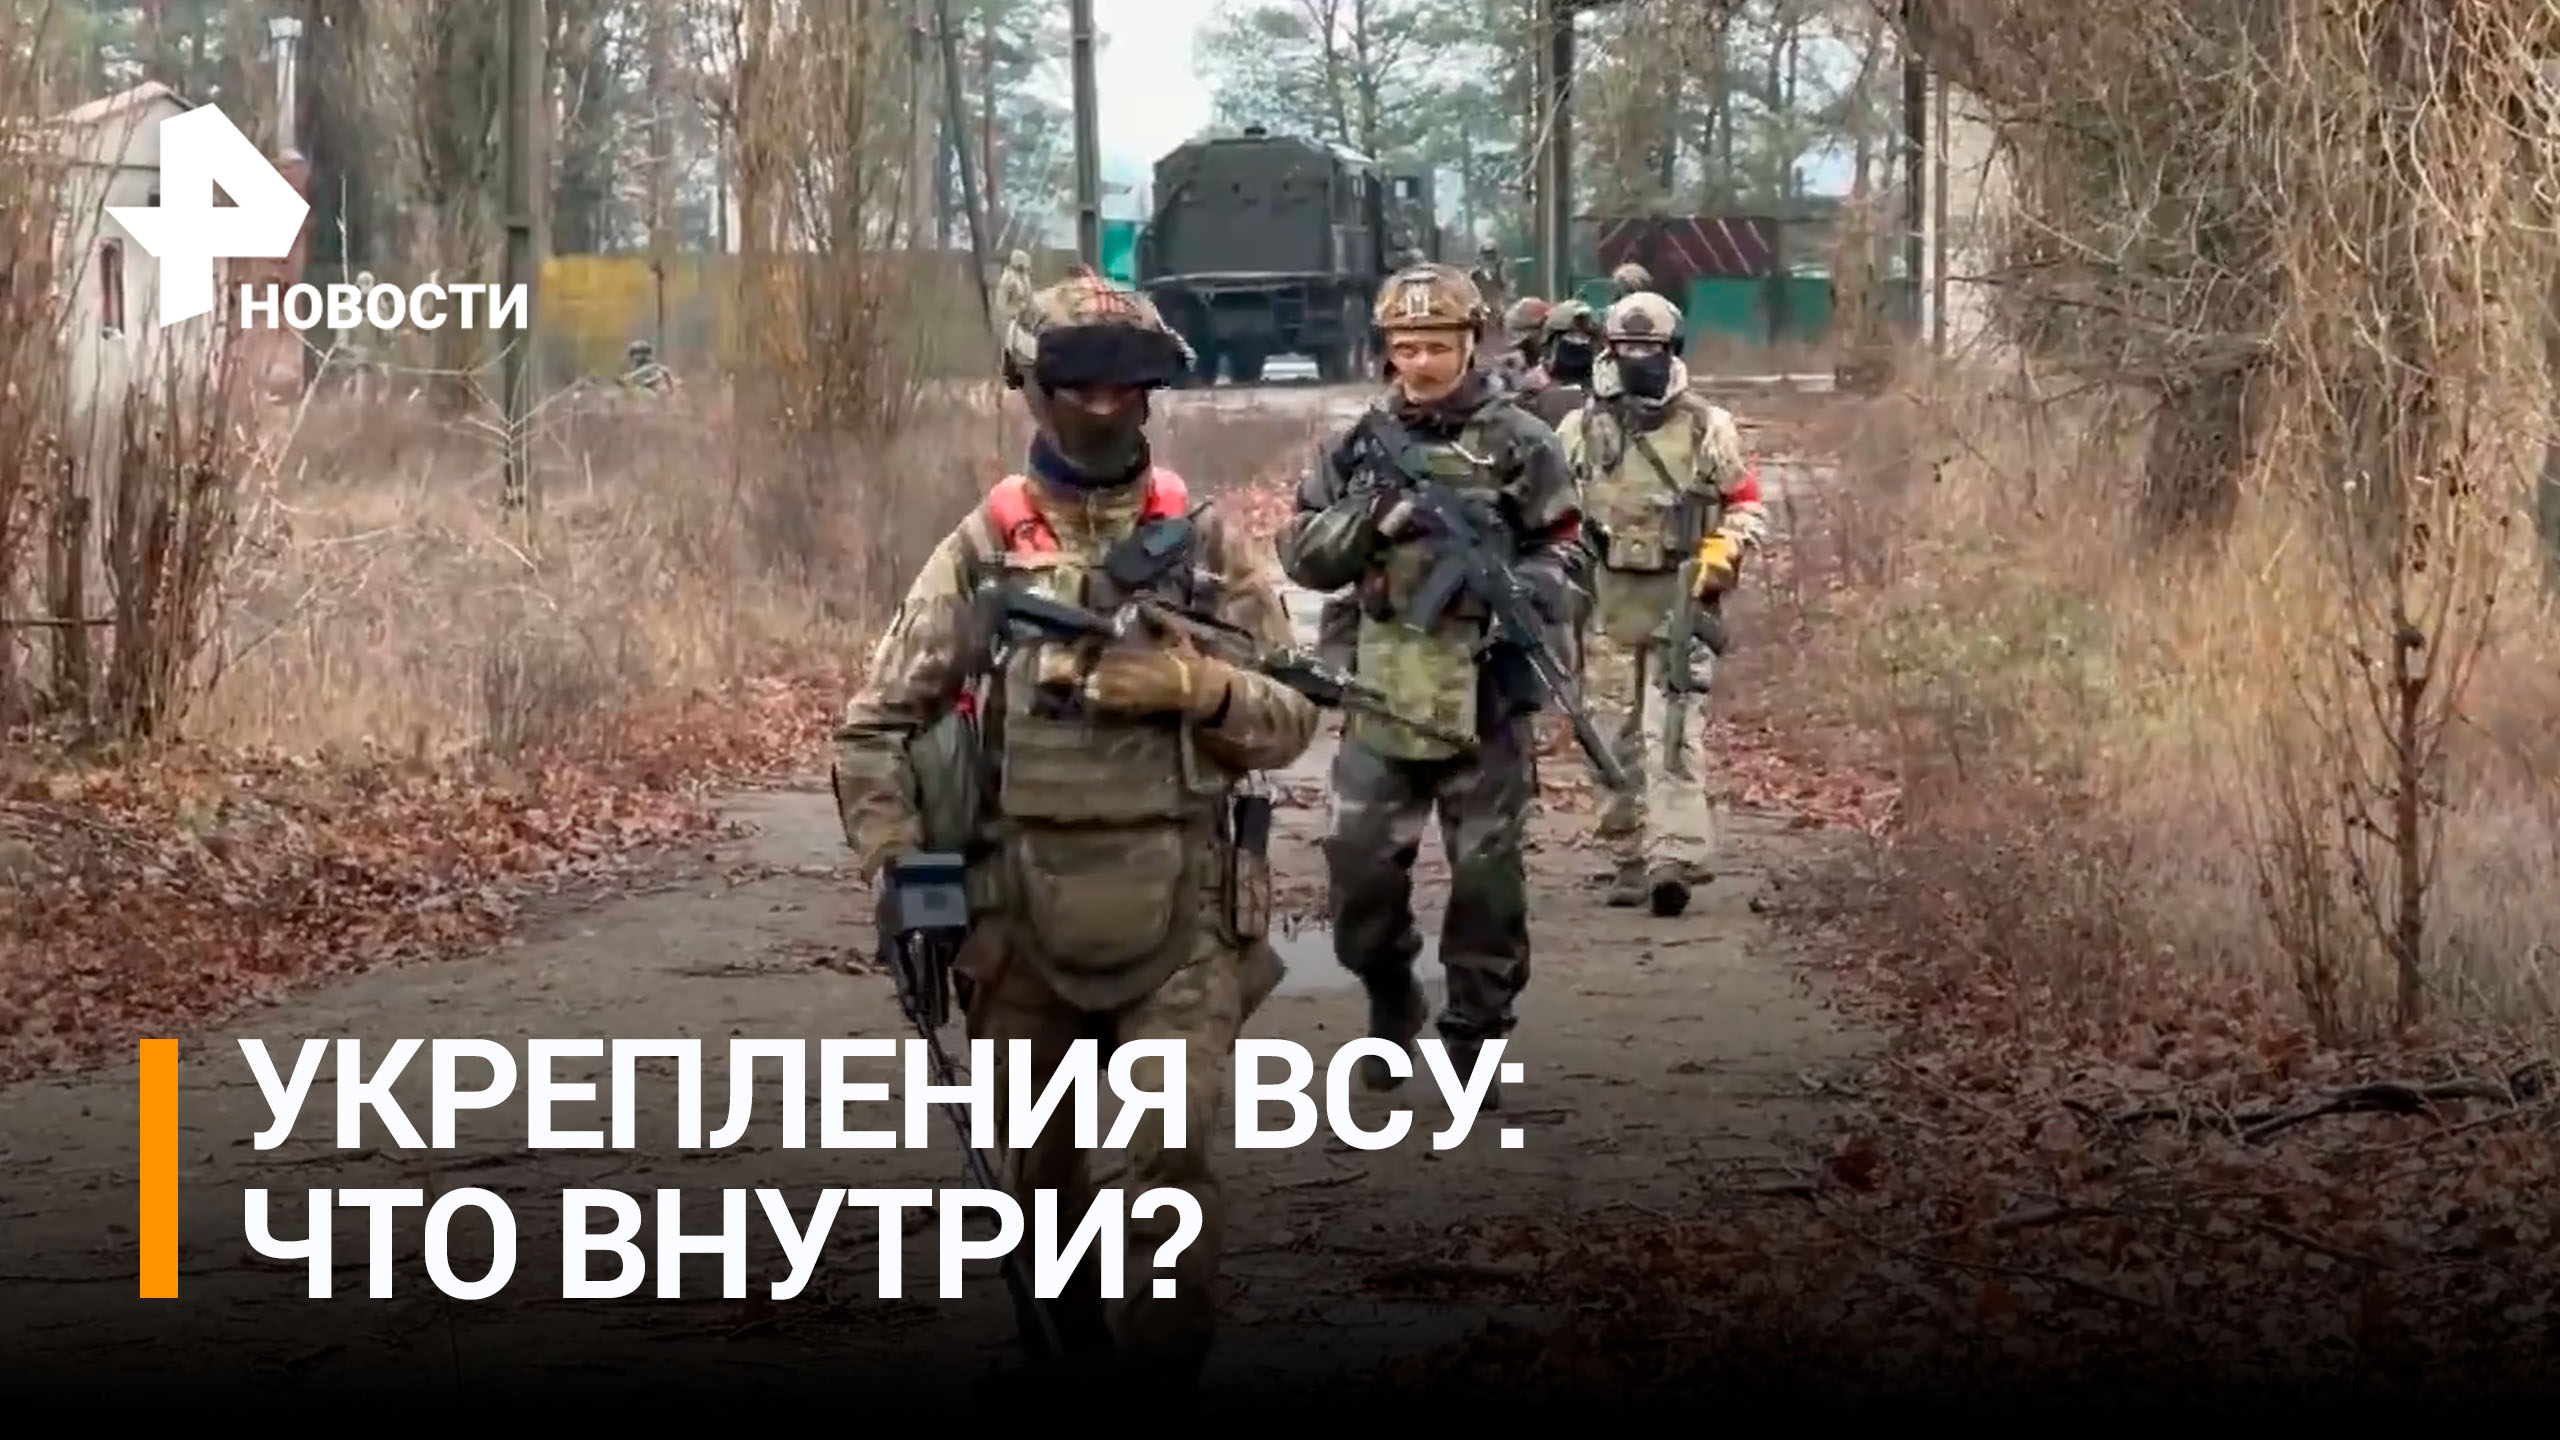 Росгвардейцы нашли бывшие укрепления ВСУ в зернохранилище в ДНР / РЕН Новости